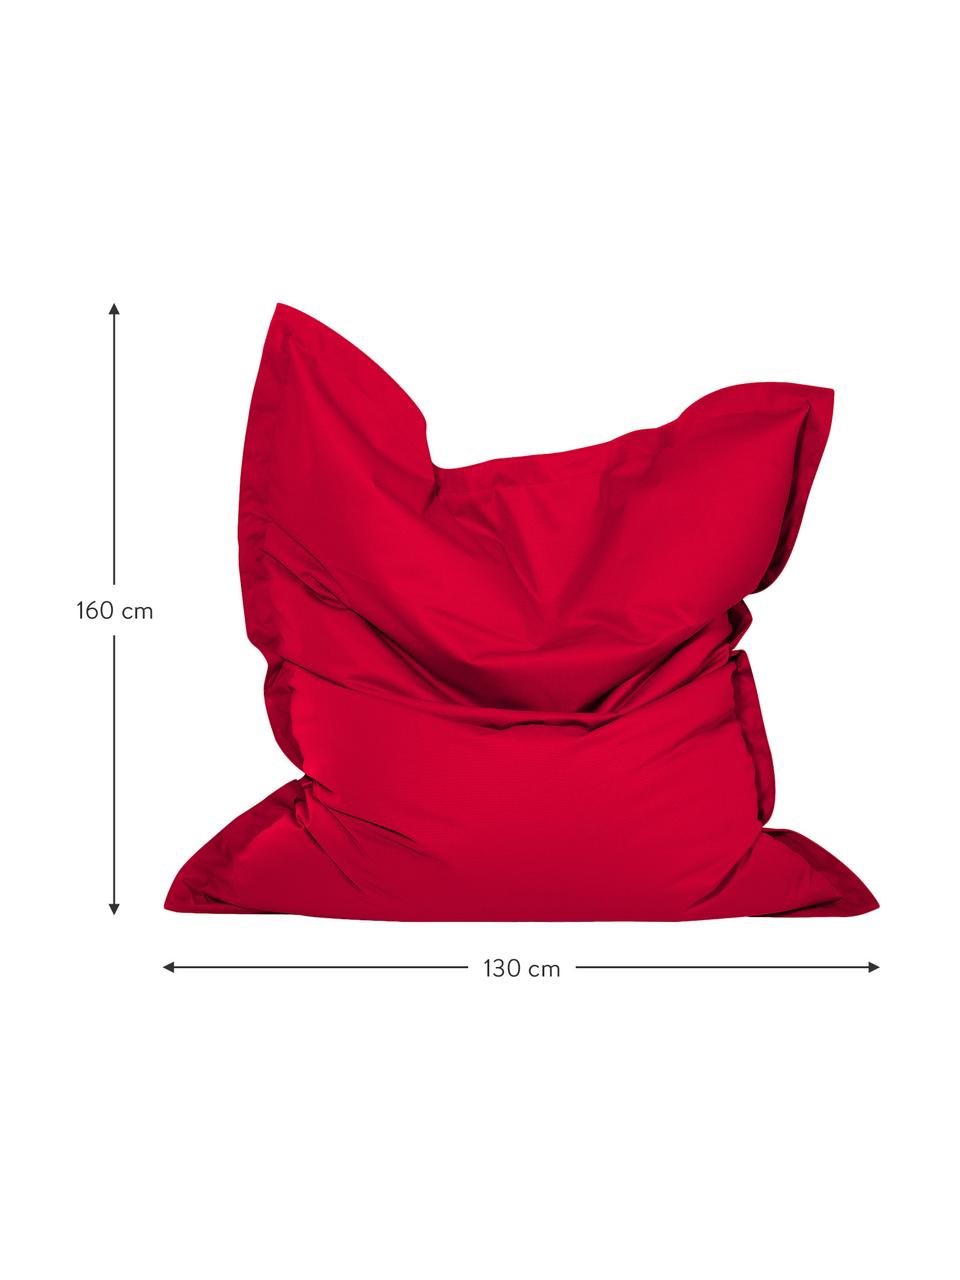 Grand fauteuil poire Meadow, Rouge, larg. 130 x haut. 160 cm